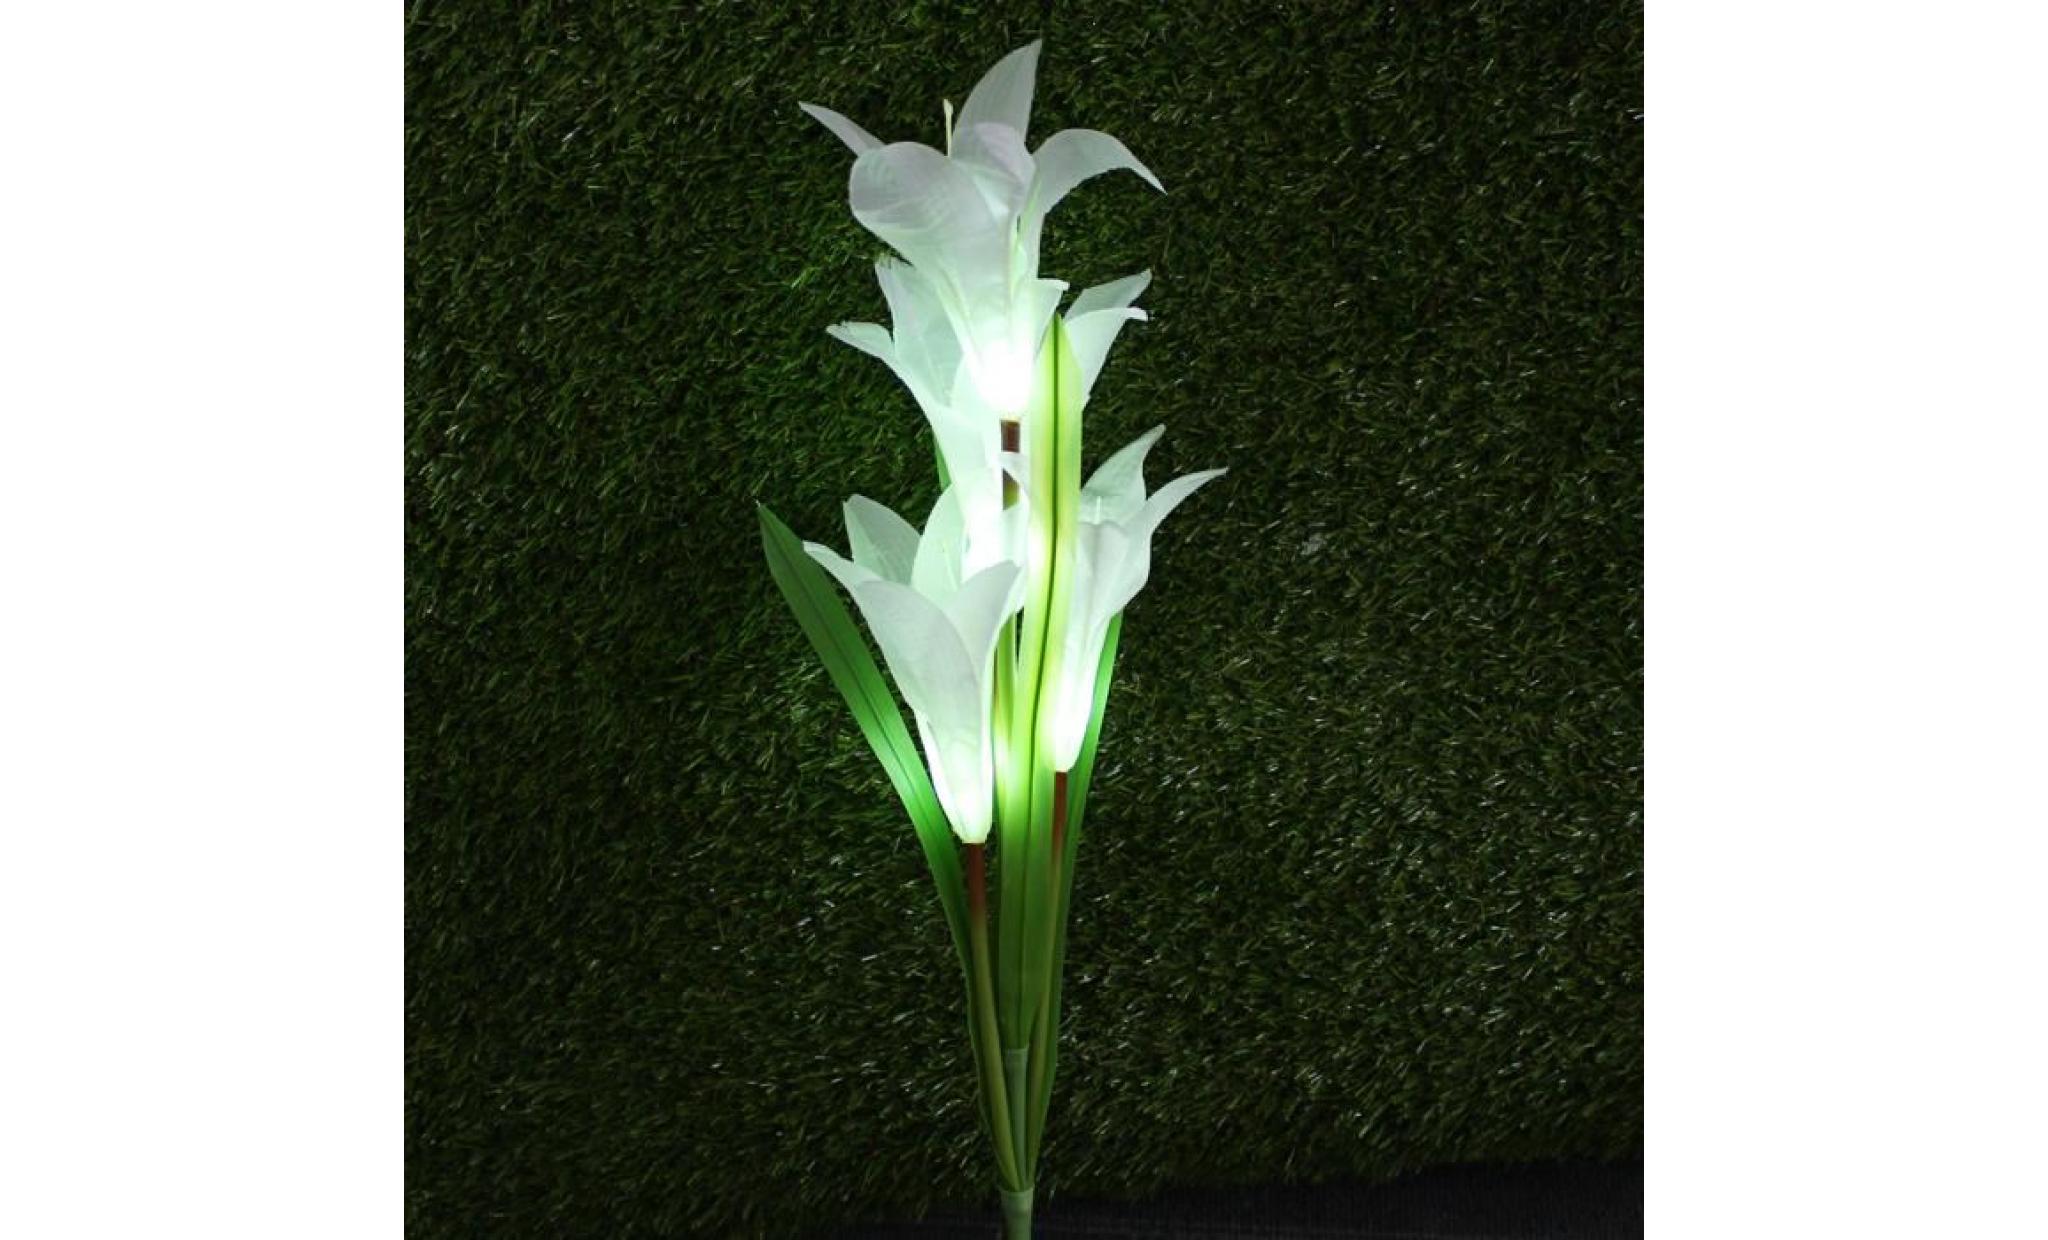 neufu lily flower garden powered solaire stake lumières fleurs artificielles 4 led blanc pas cher